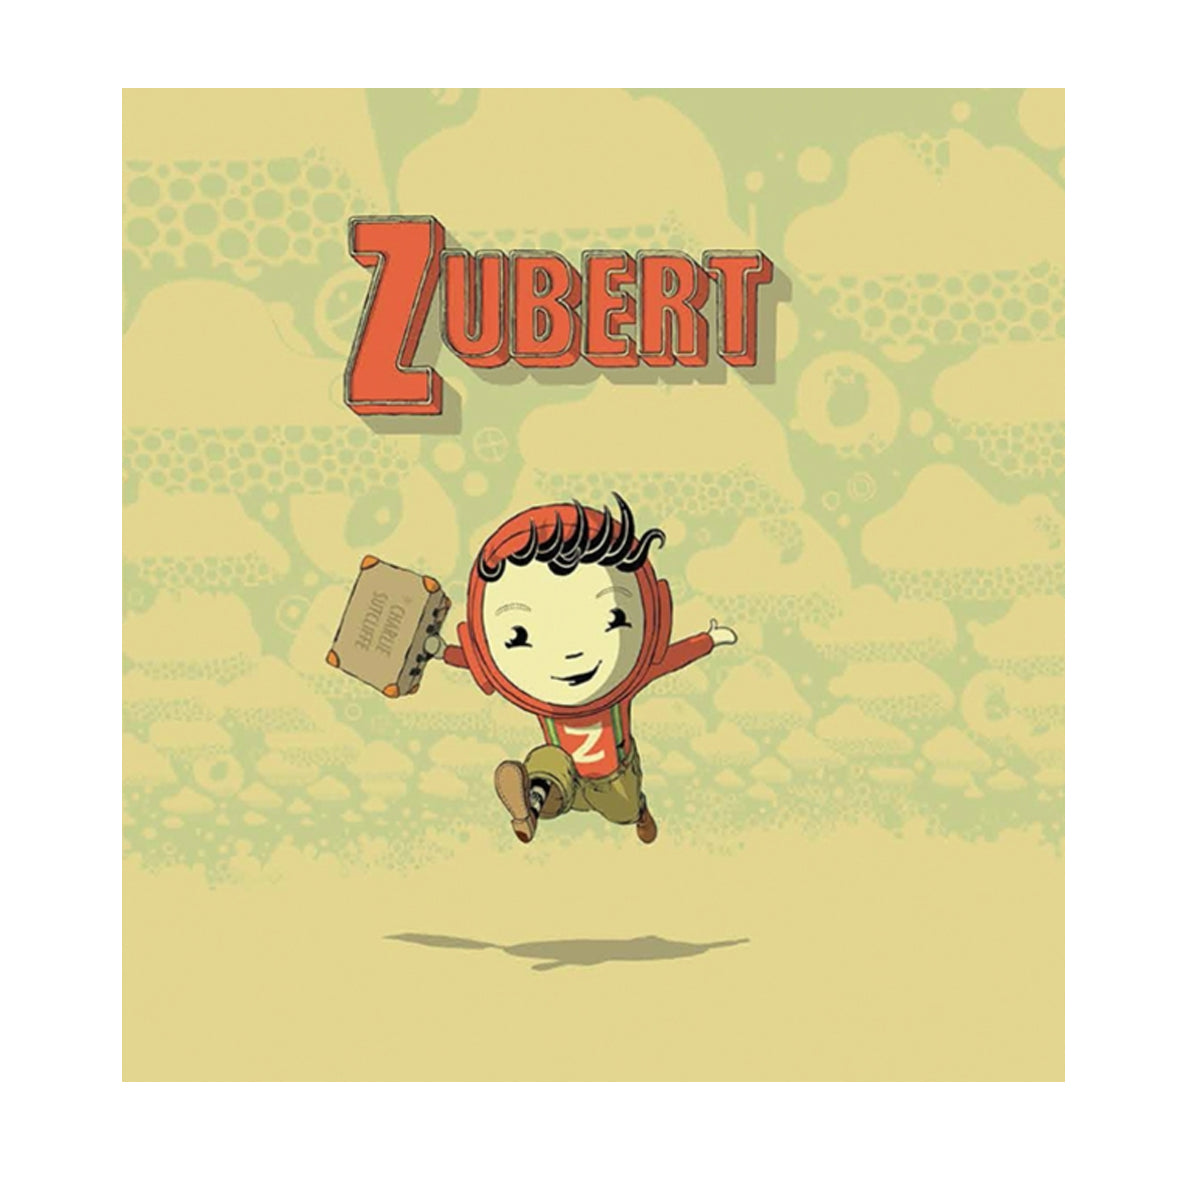 Book - Zubert